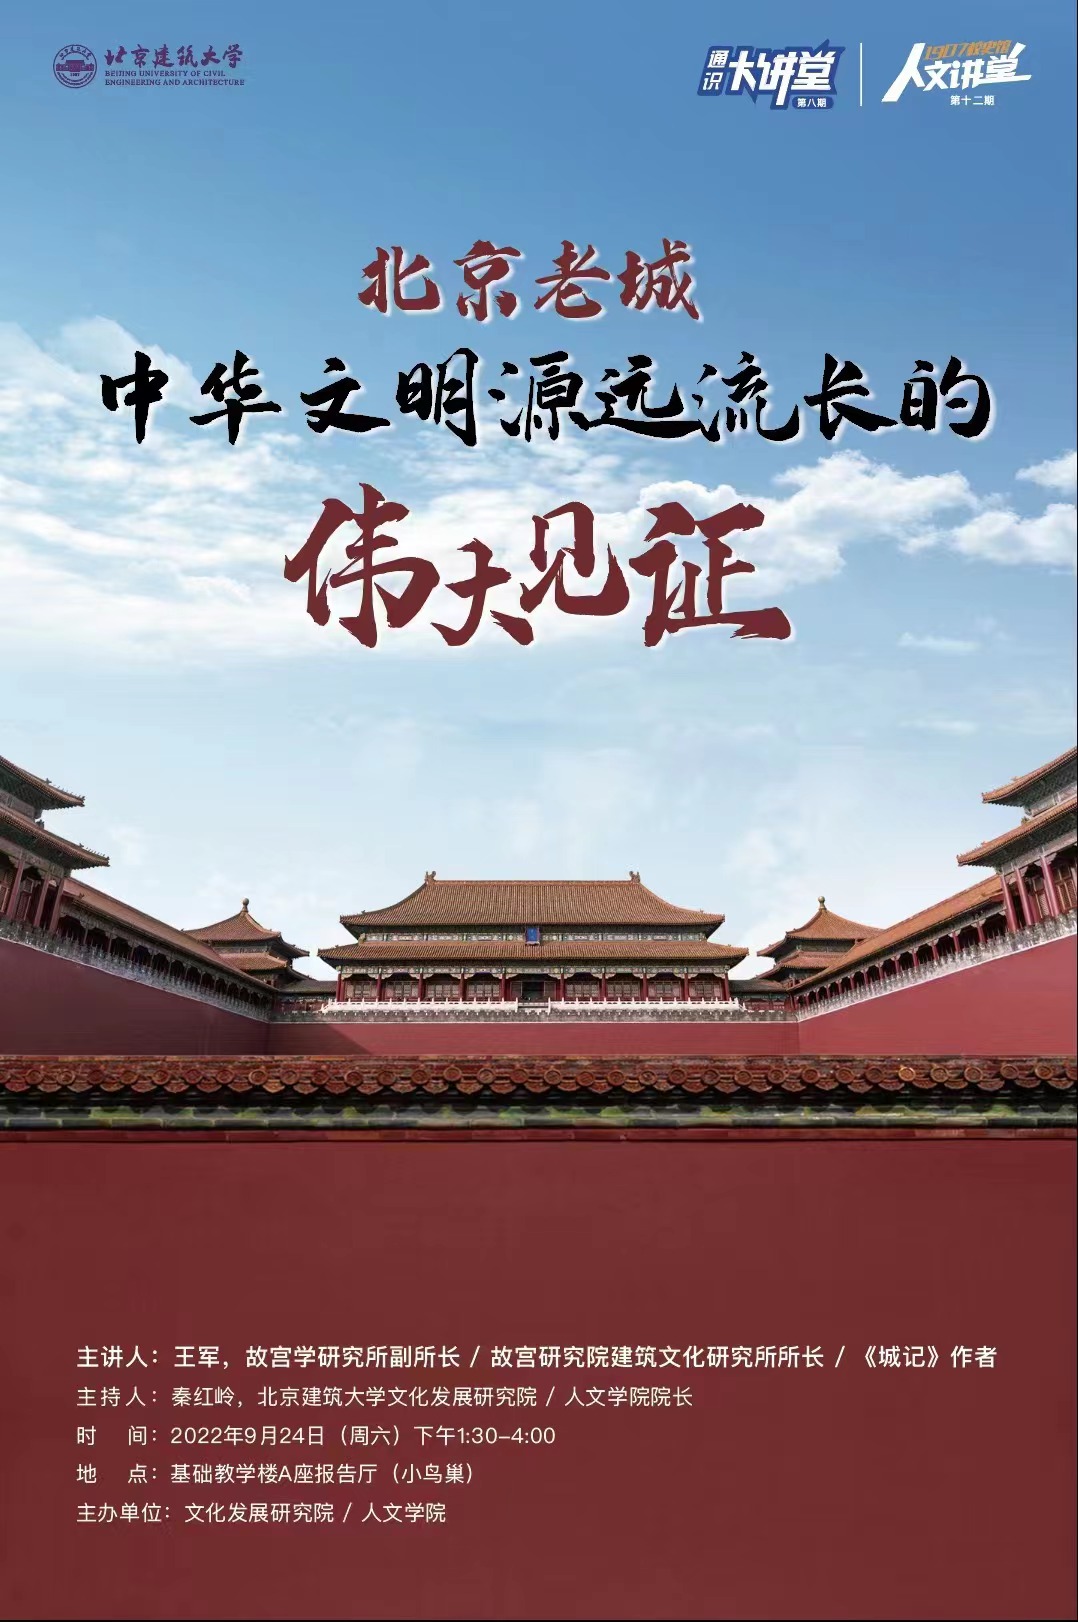 人文讲堂第十二期暨通识大讲堂第八期——北京老城：中华文明源远流长的伟大见证